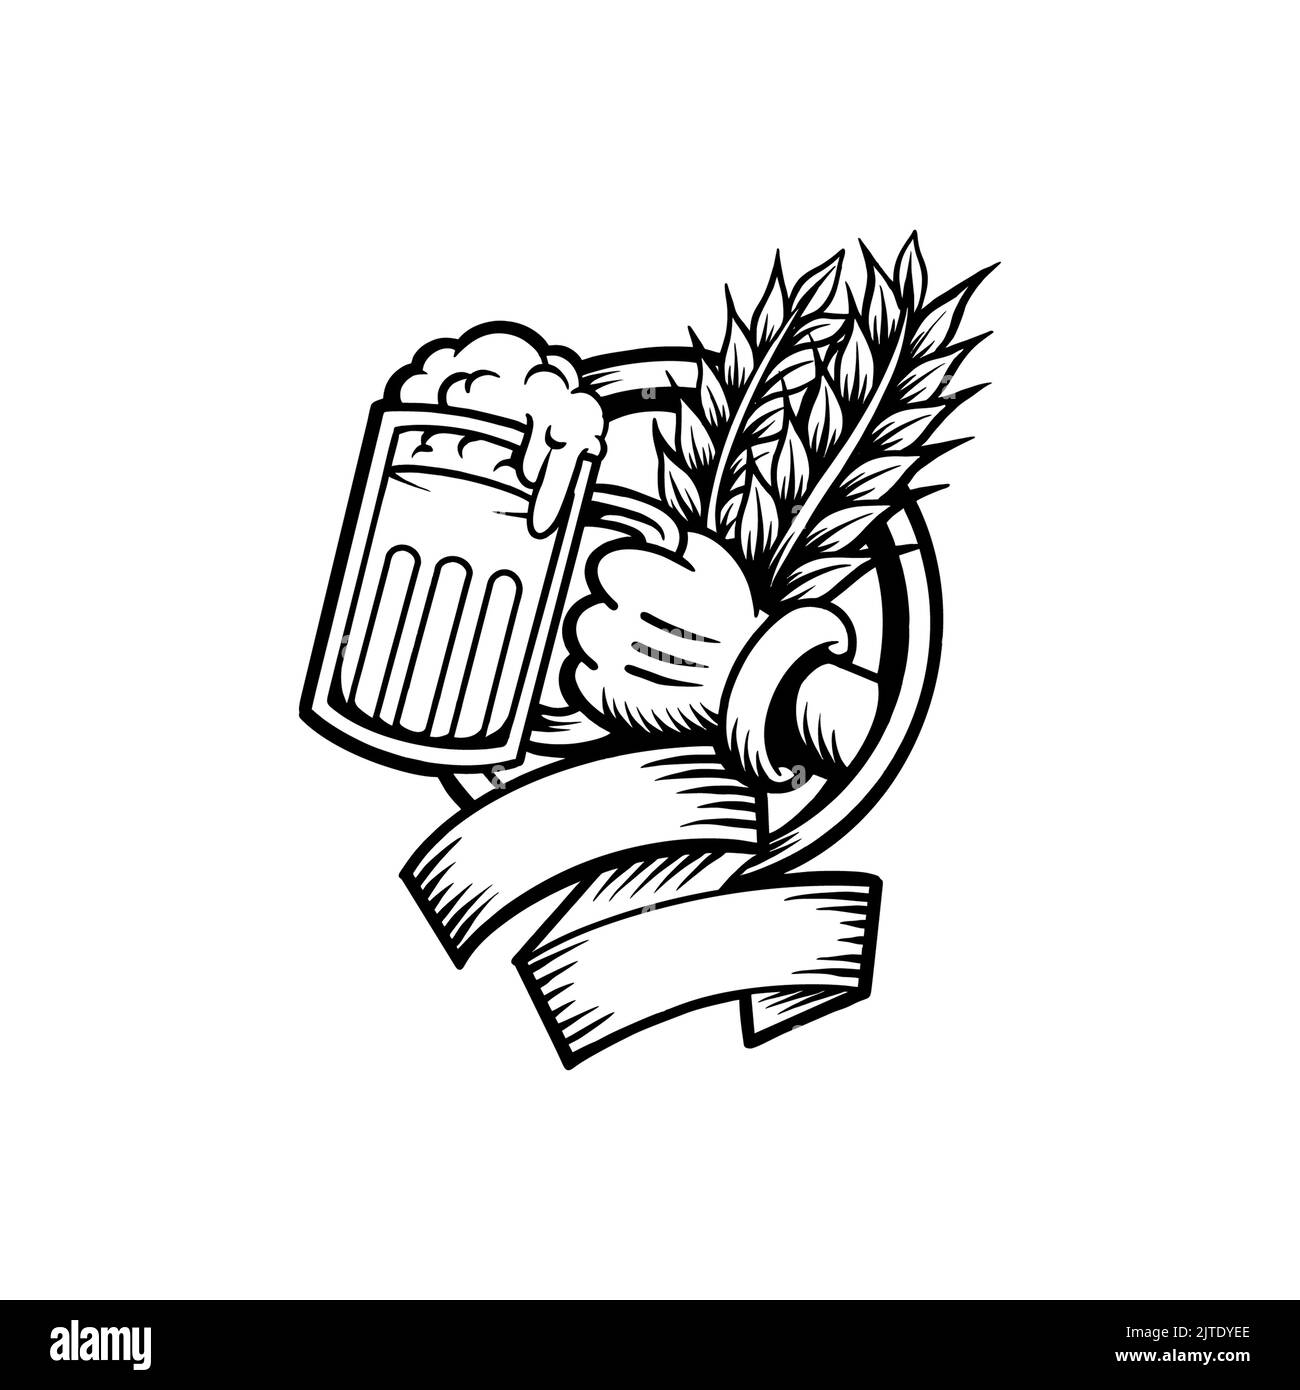 Caricature de bière en verre Mascot Silhouette illustrations vectorielles pour votre travail logo, t-shirt de la marchandise de la mascotte, autocollants et dessins d'étiquettes, affiche, message d'accueil Banque D'Images